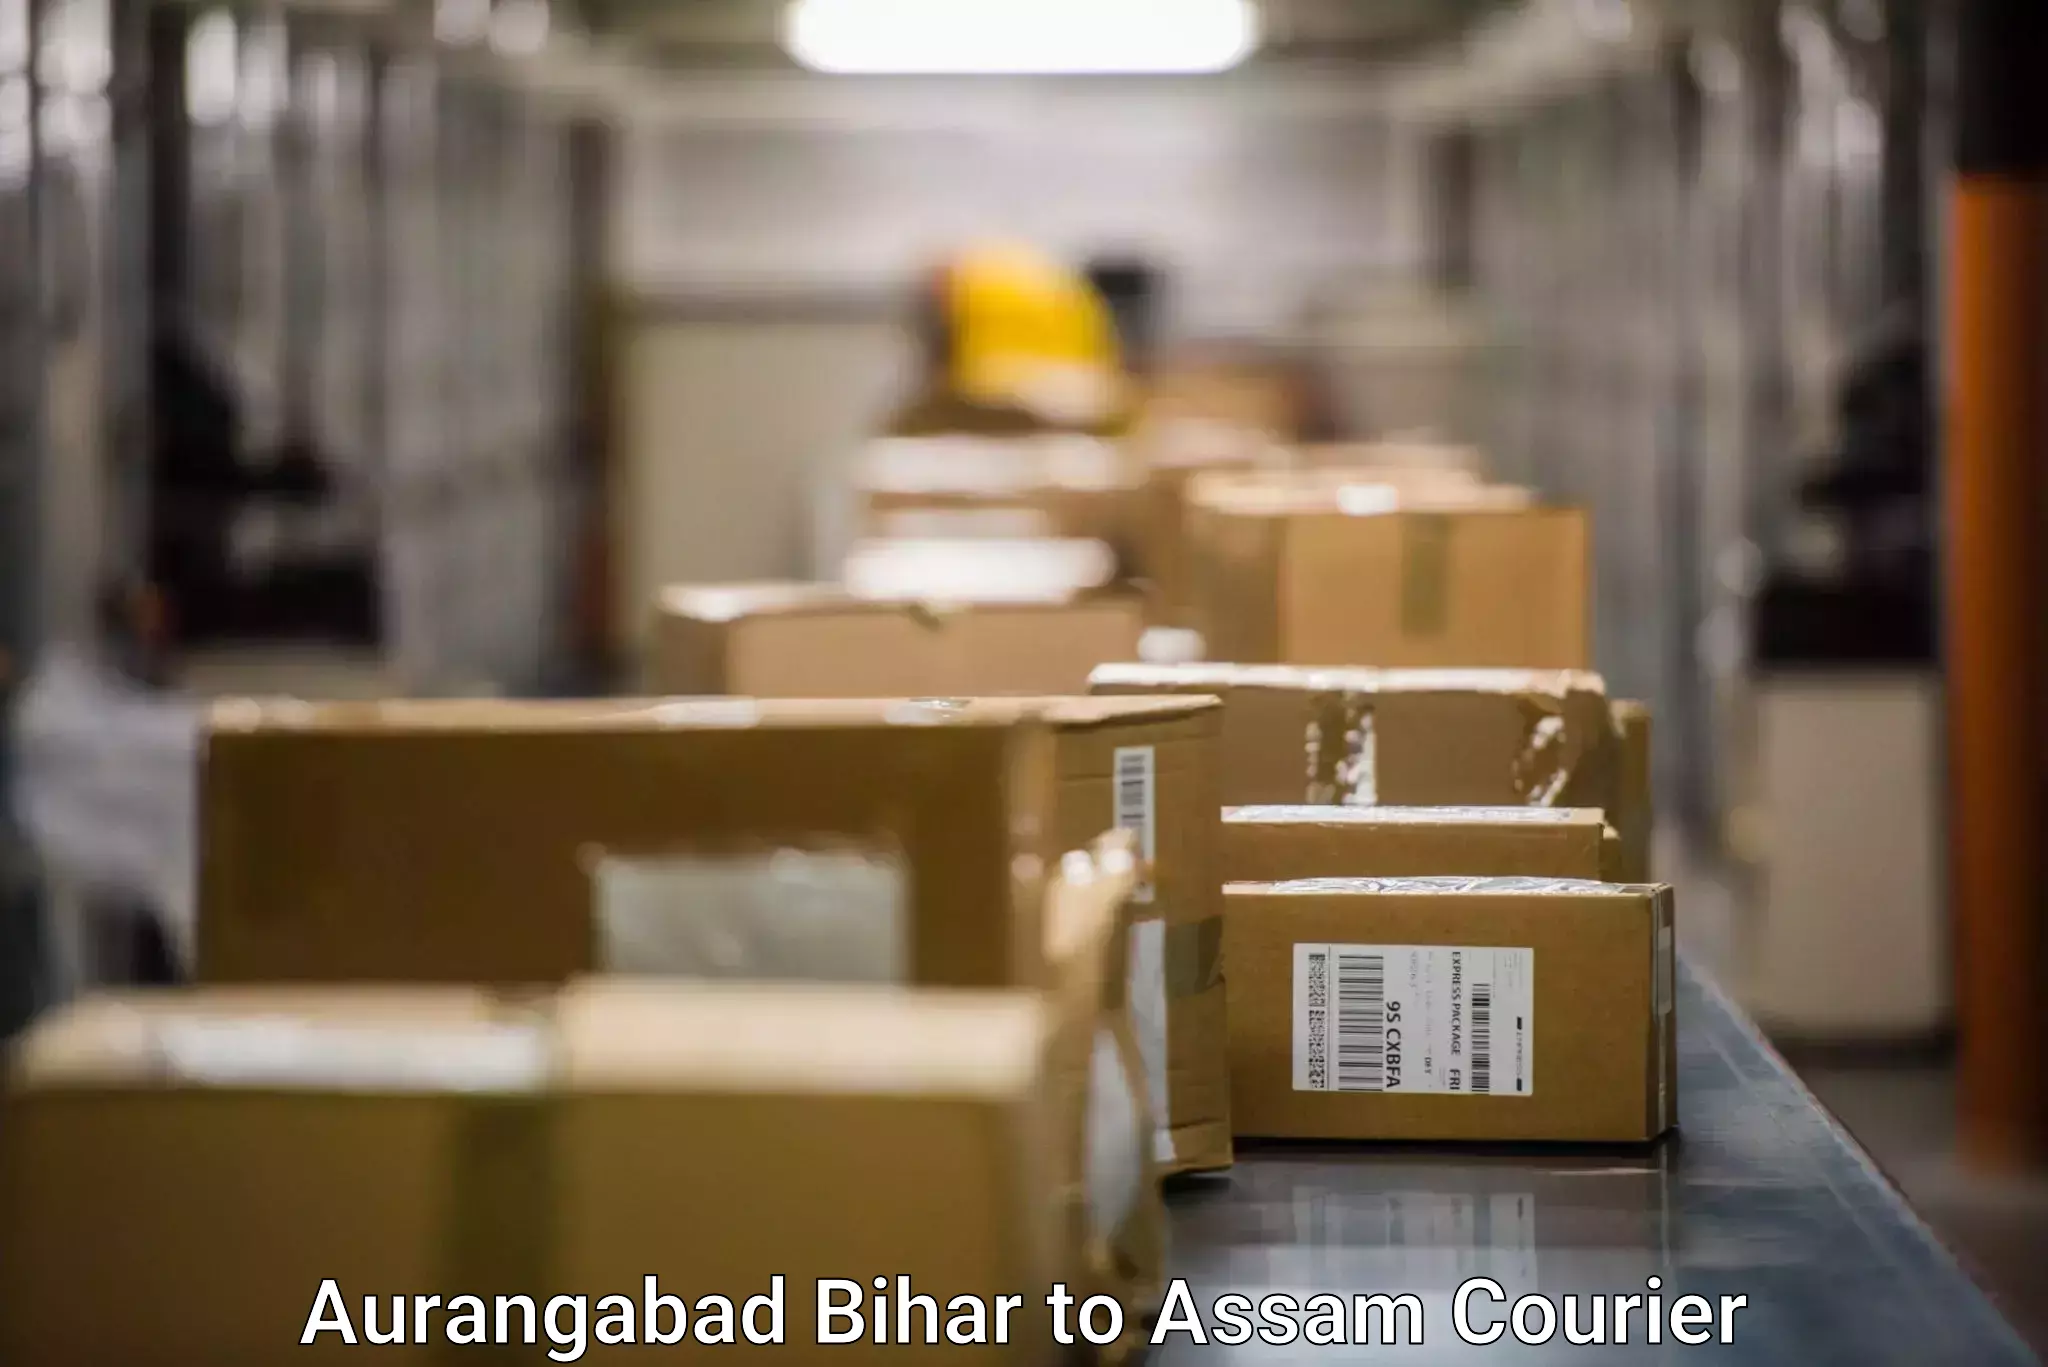 Customer-centric shipping Aurangabad Bihar to Dibrugarh